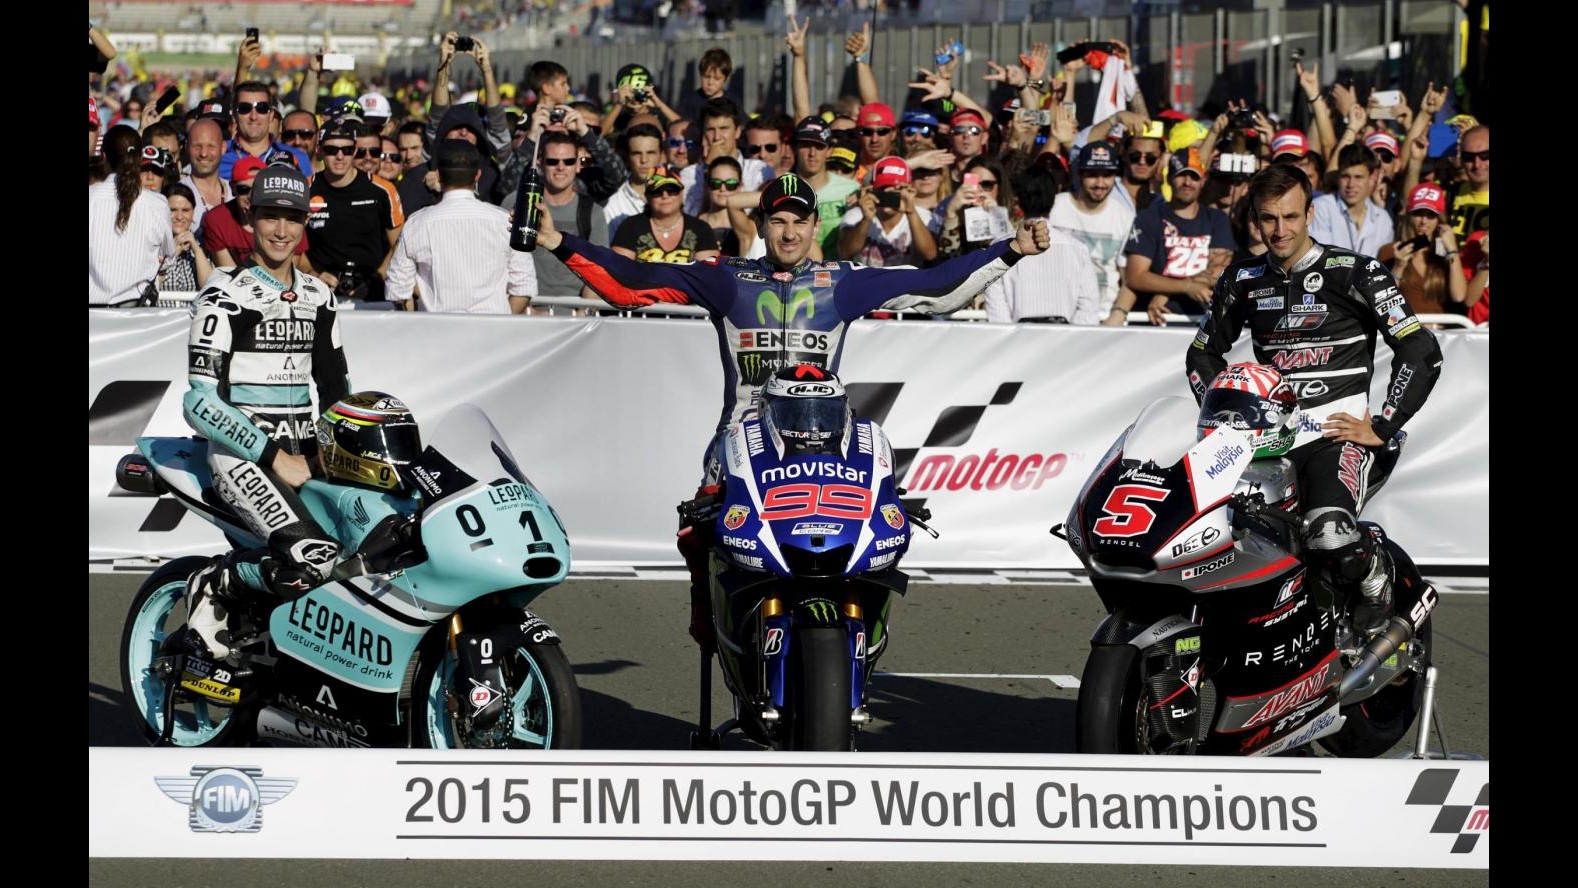 MotoGp, Lorenzo campione a Valencia: le tappe del duello con Rossi